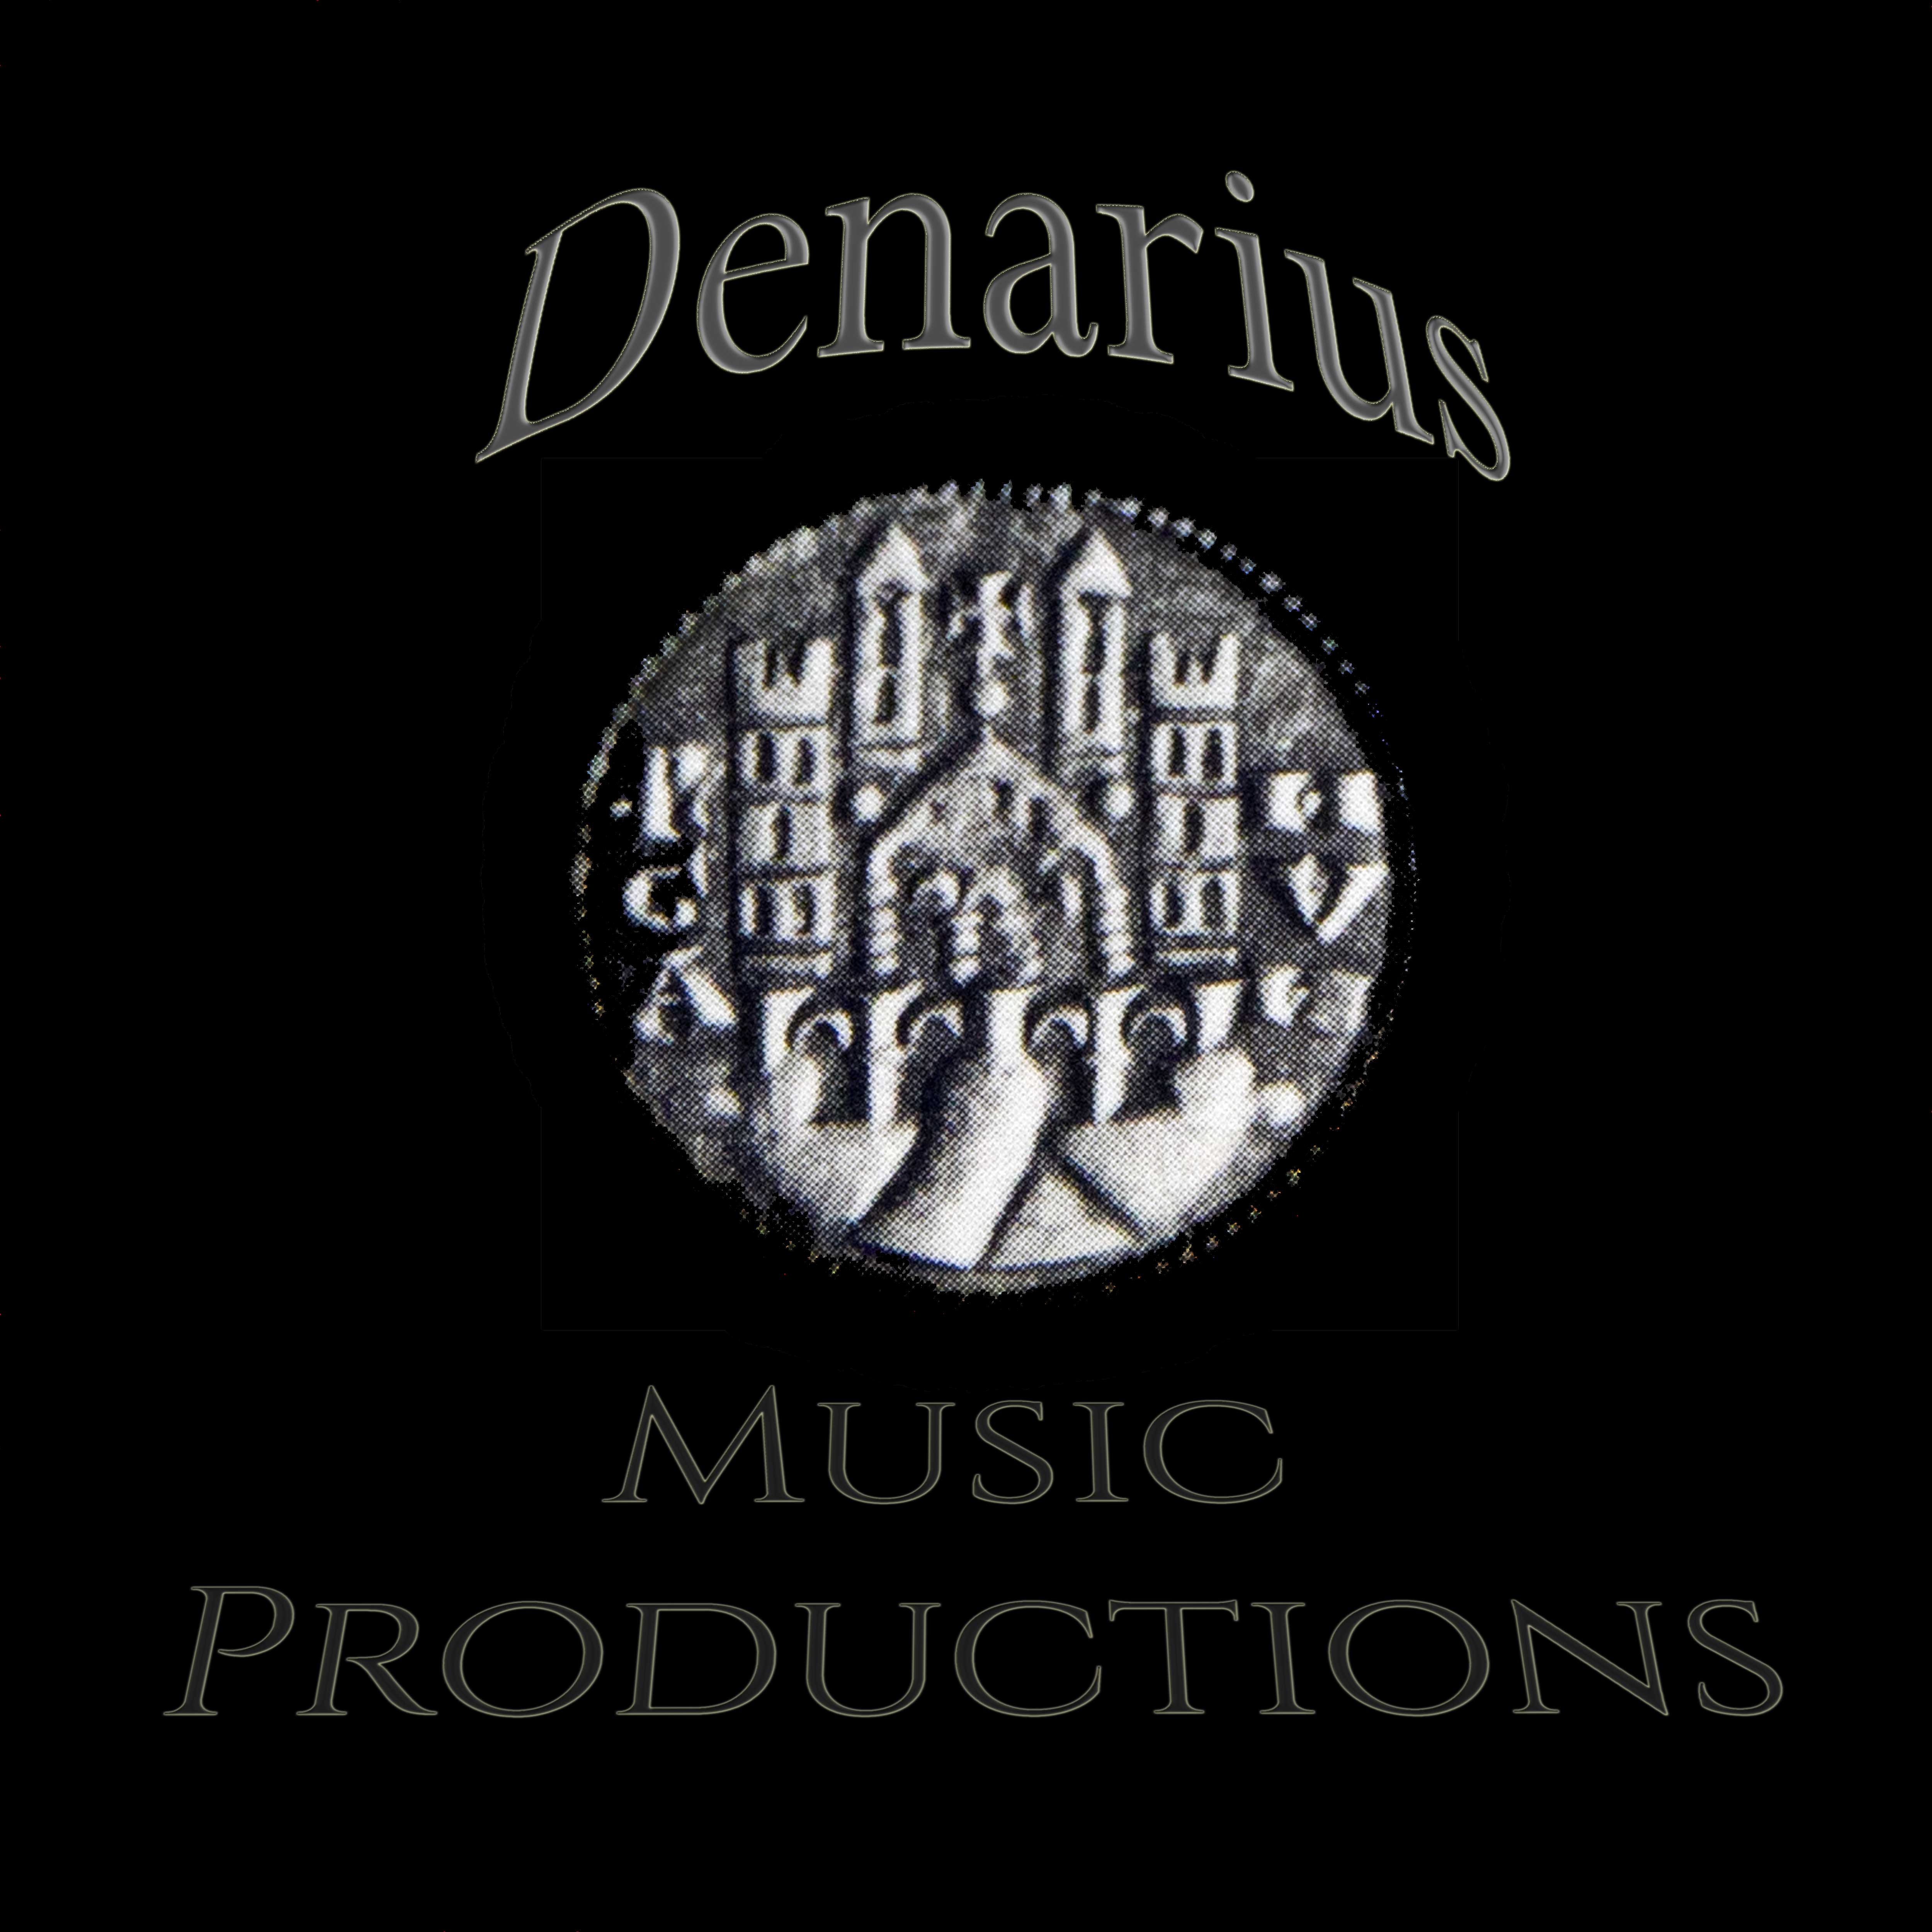 Denarius Music Productions